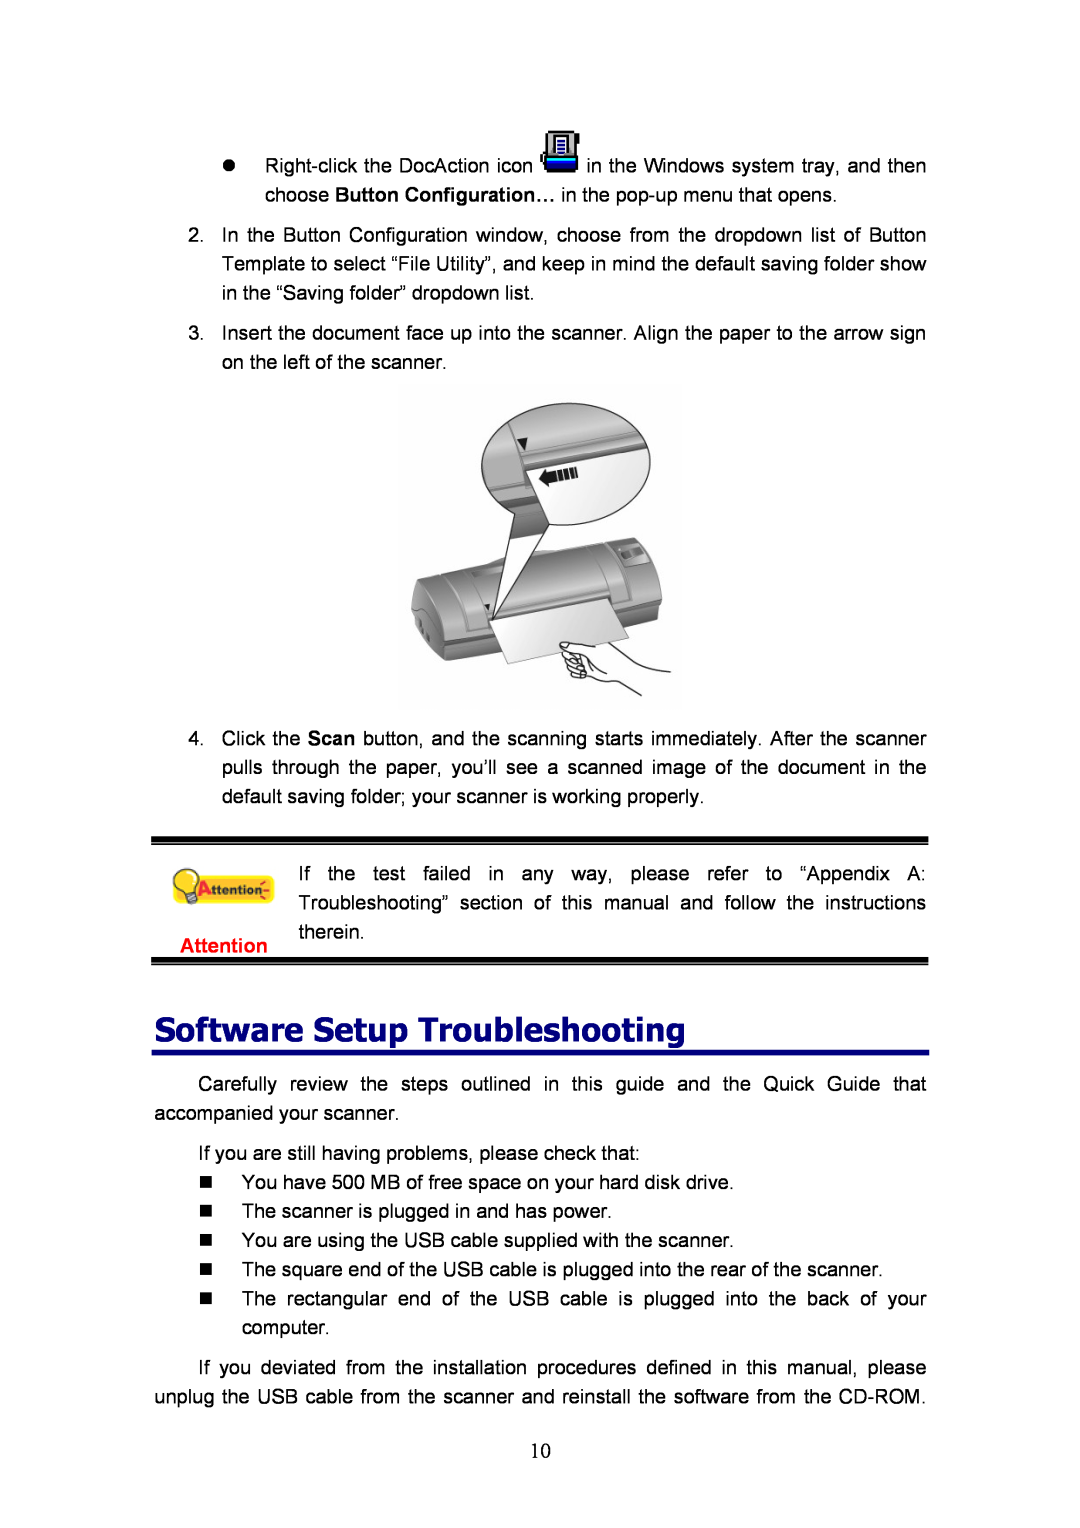 Plustek D600, MobileOffice Scanner manual Software Setup Troubleshooting 